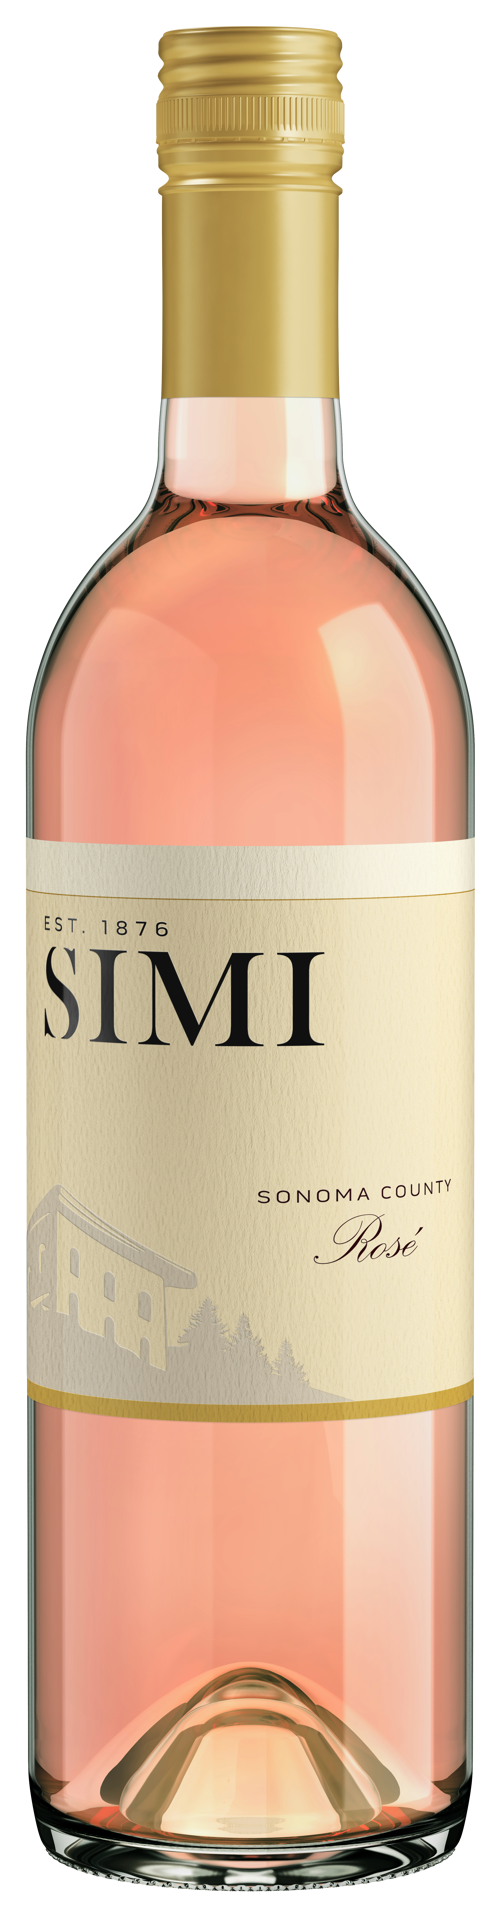 slide 1 of 5, SIMI Sonoma County Dry Rose Wine, 750 mL Bottle, 25.36 fl oz